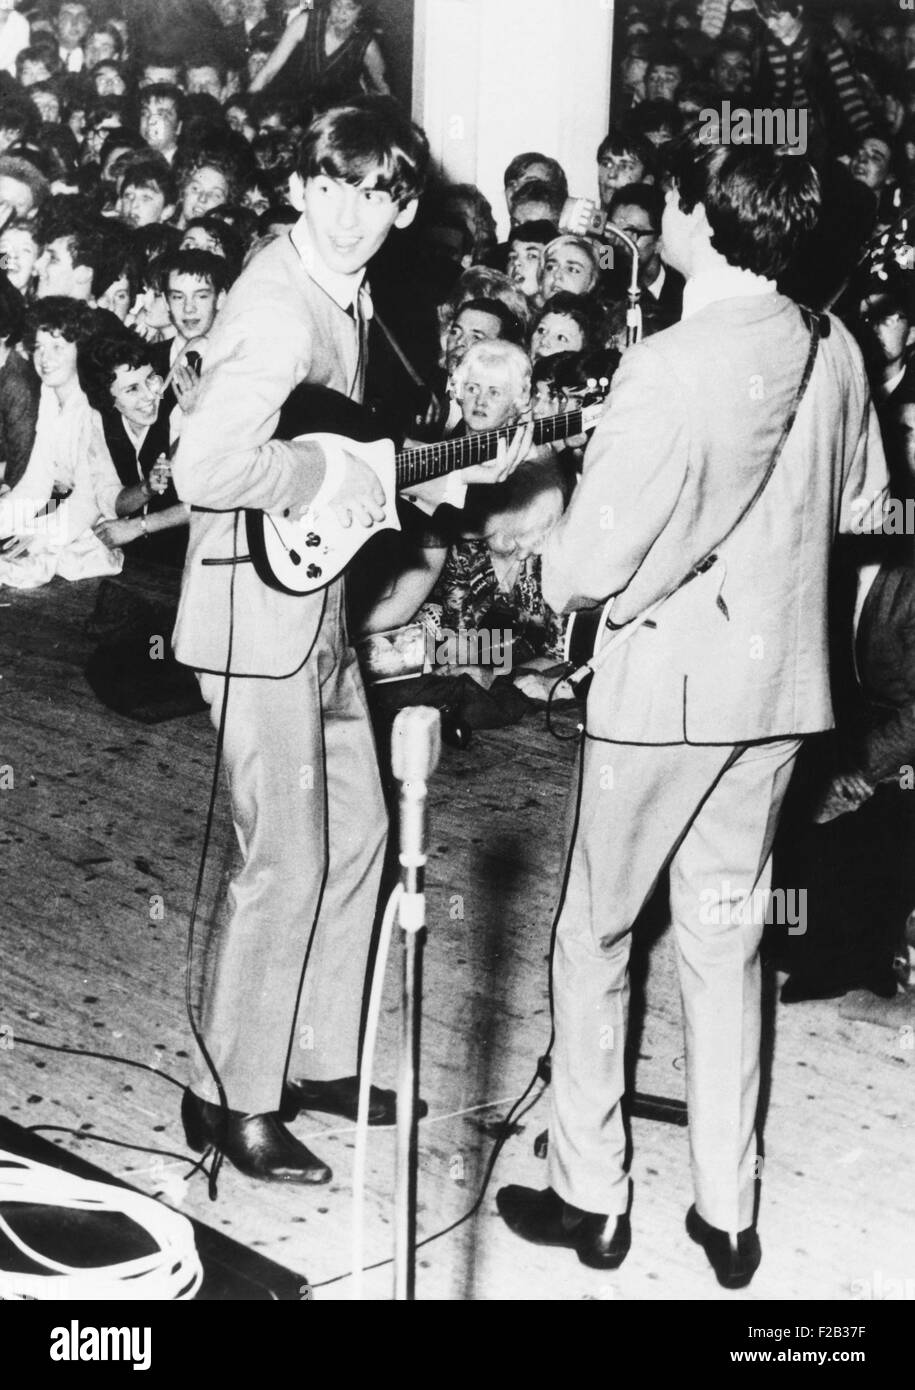 George Harrison (à gauche) et Paul McCartney des Beatles, effectuer à Manchester, en Angleterre. Le 11 novembre 1963. La légende originale de cette news photo décrit les chanteurs comme 'Arrêté' frangée. Ils portent le titre de 'Mod' vestes sans col avec passepoil noir et 'Chelsea bottes". CSU (2015  7 275) Banque D'Images